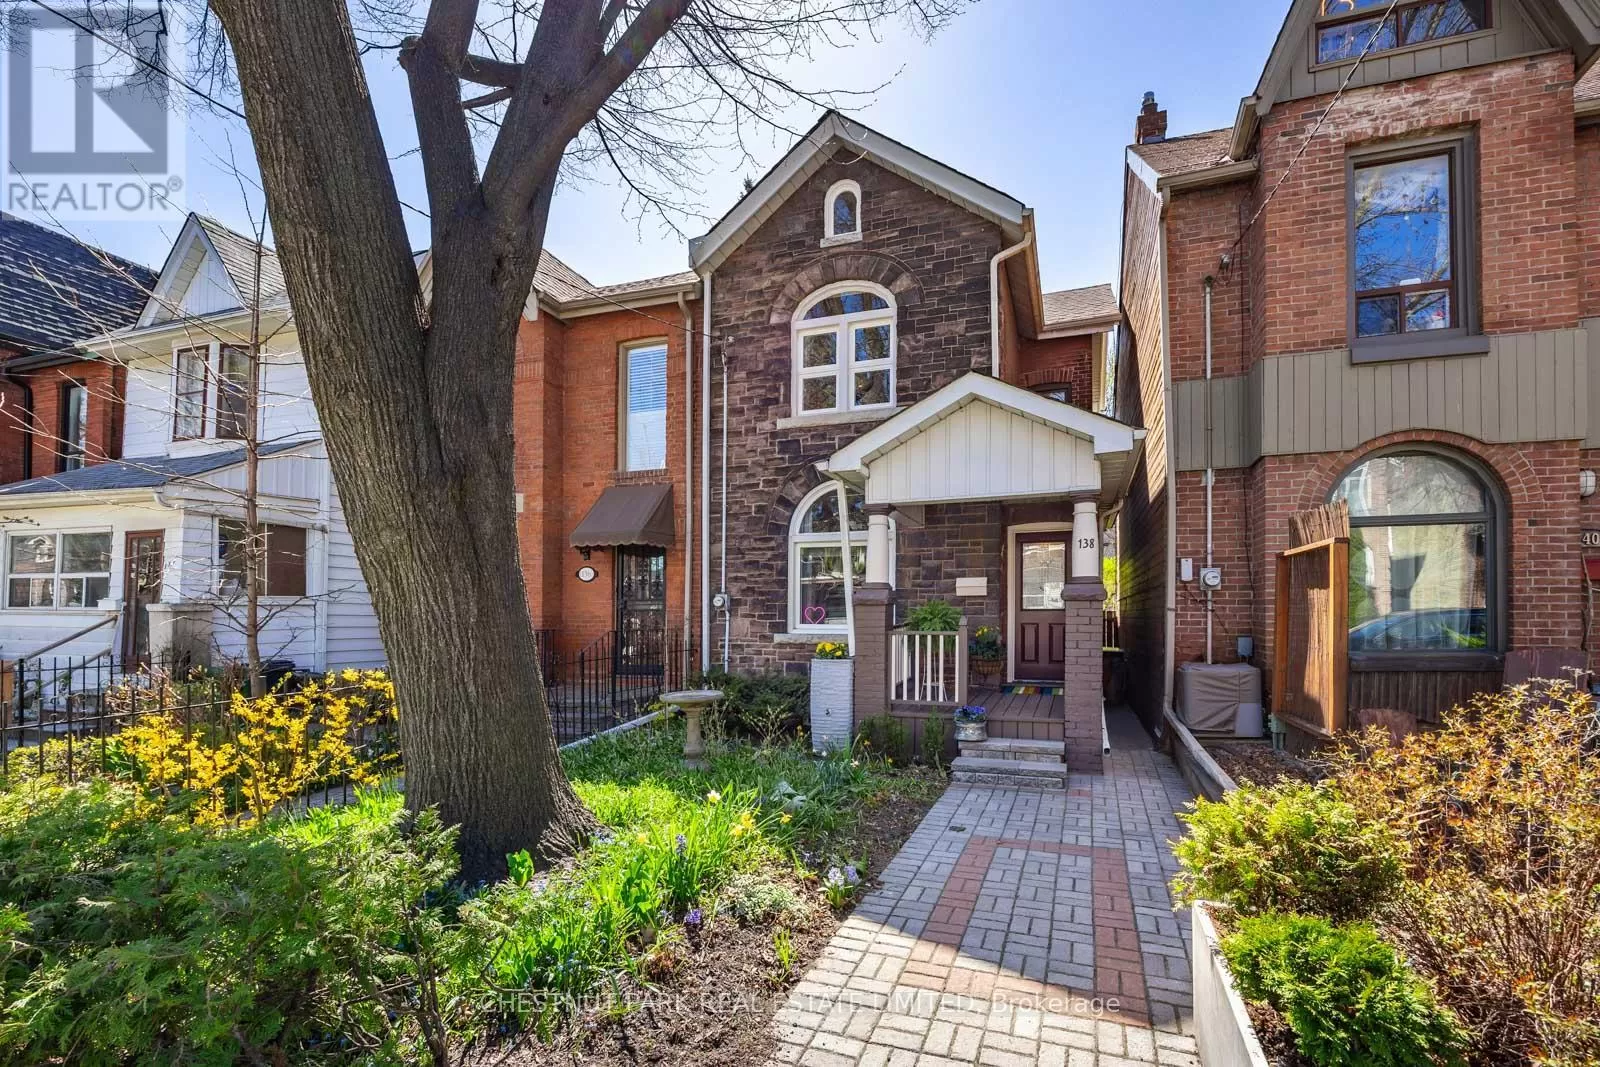 House for rent: 138 Galt Avenue, Toronto, Ontario M4M 2Z3